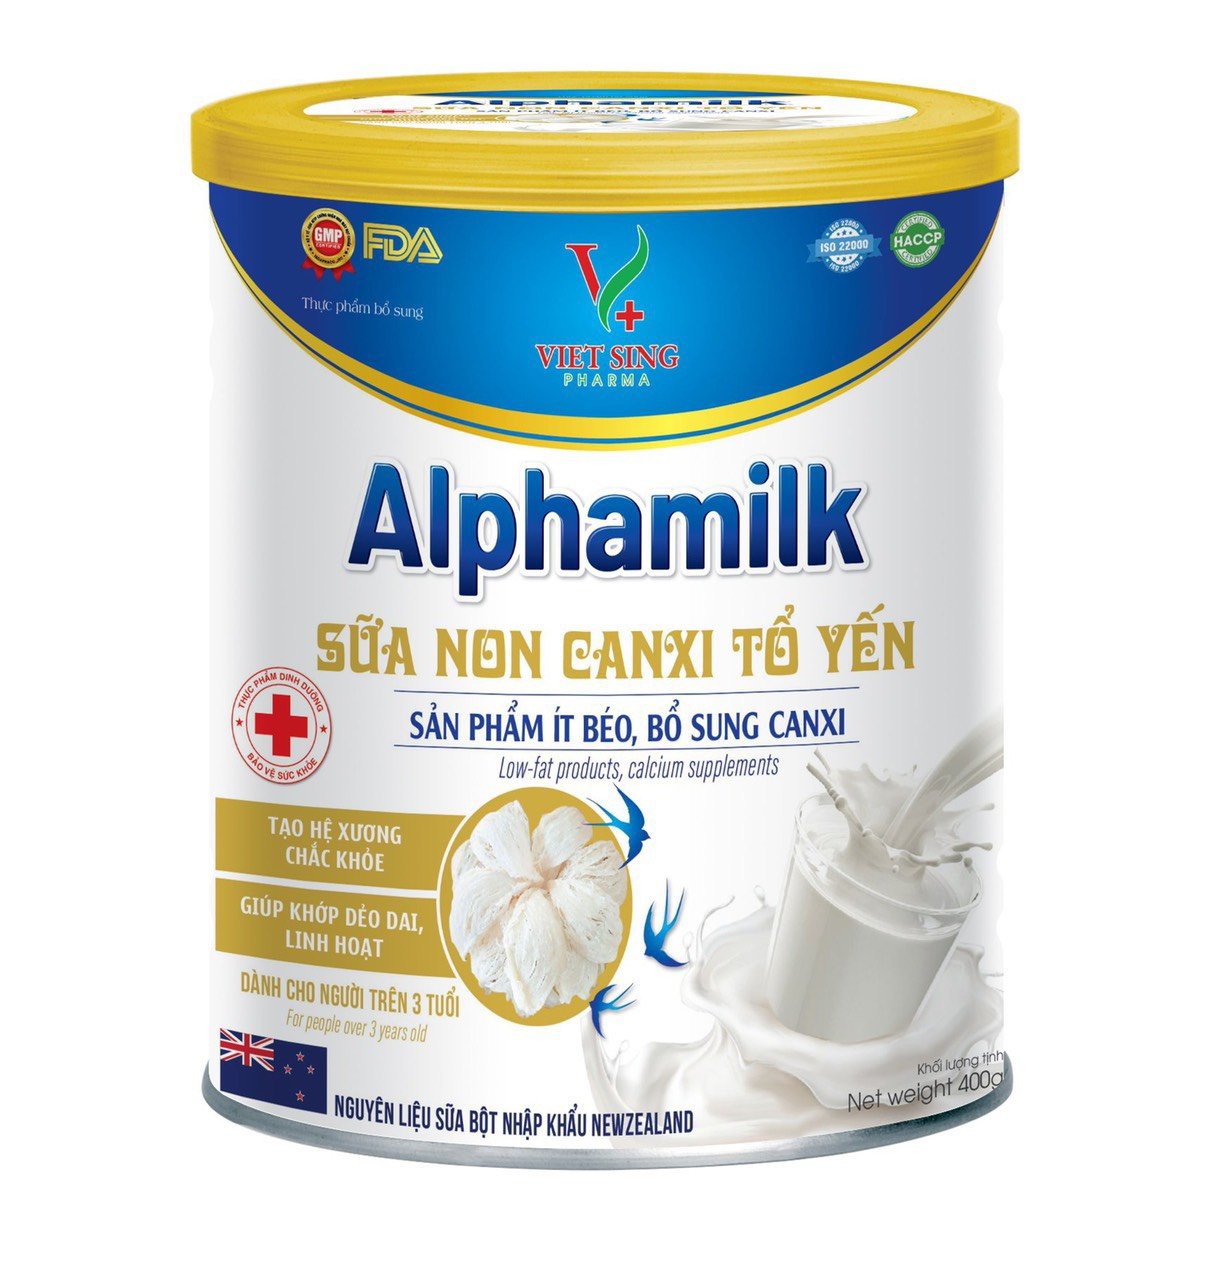 Hộp 900g Alphamilk Sữa Non Canxi Tổ Yến Giúp Tăng Cường Miễn Dịch, bổ sung canxi mk7 tăng chiều cao cho trẻ và ngừa loãng xương cho người lớn. tốt cho tiêu hóa, tim mạch và não bộ. thumbnail